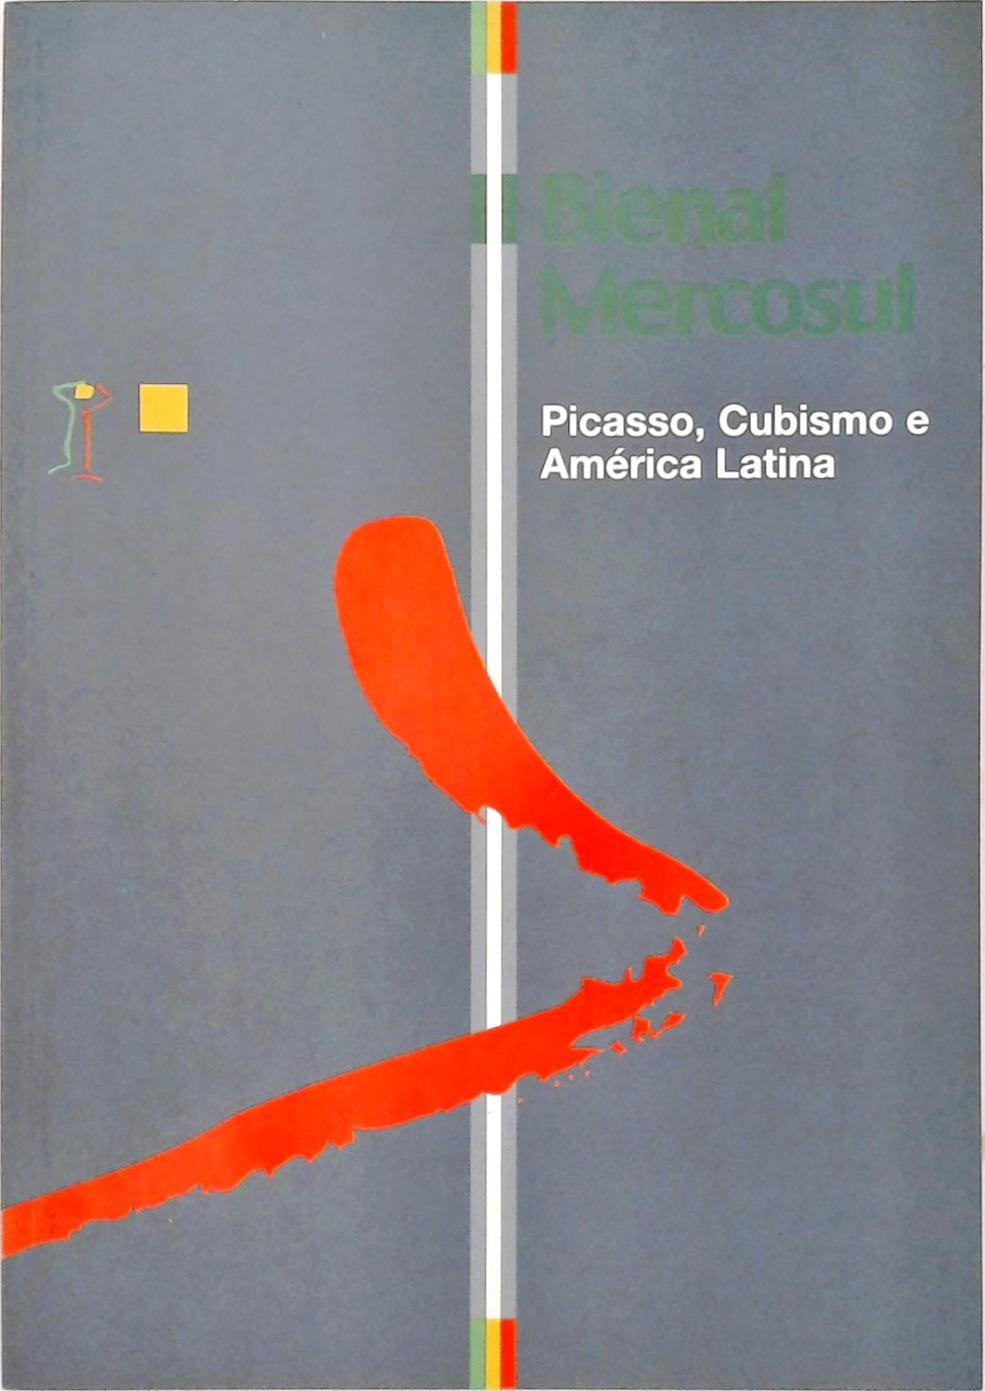 II Bienal de Artes Visuais do Mercosul - Picasso, Cubismo e América Latina